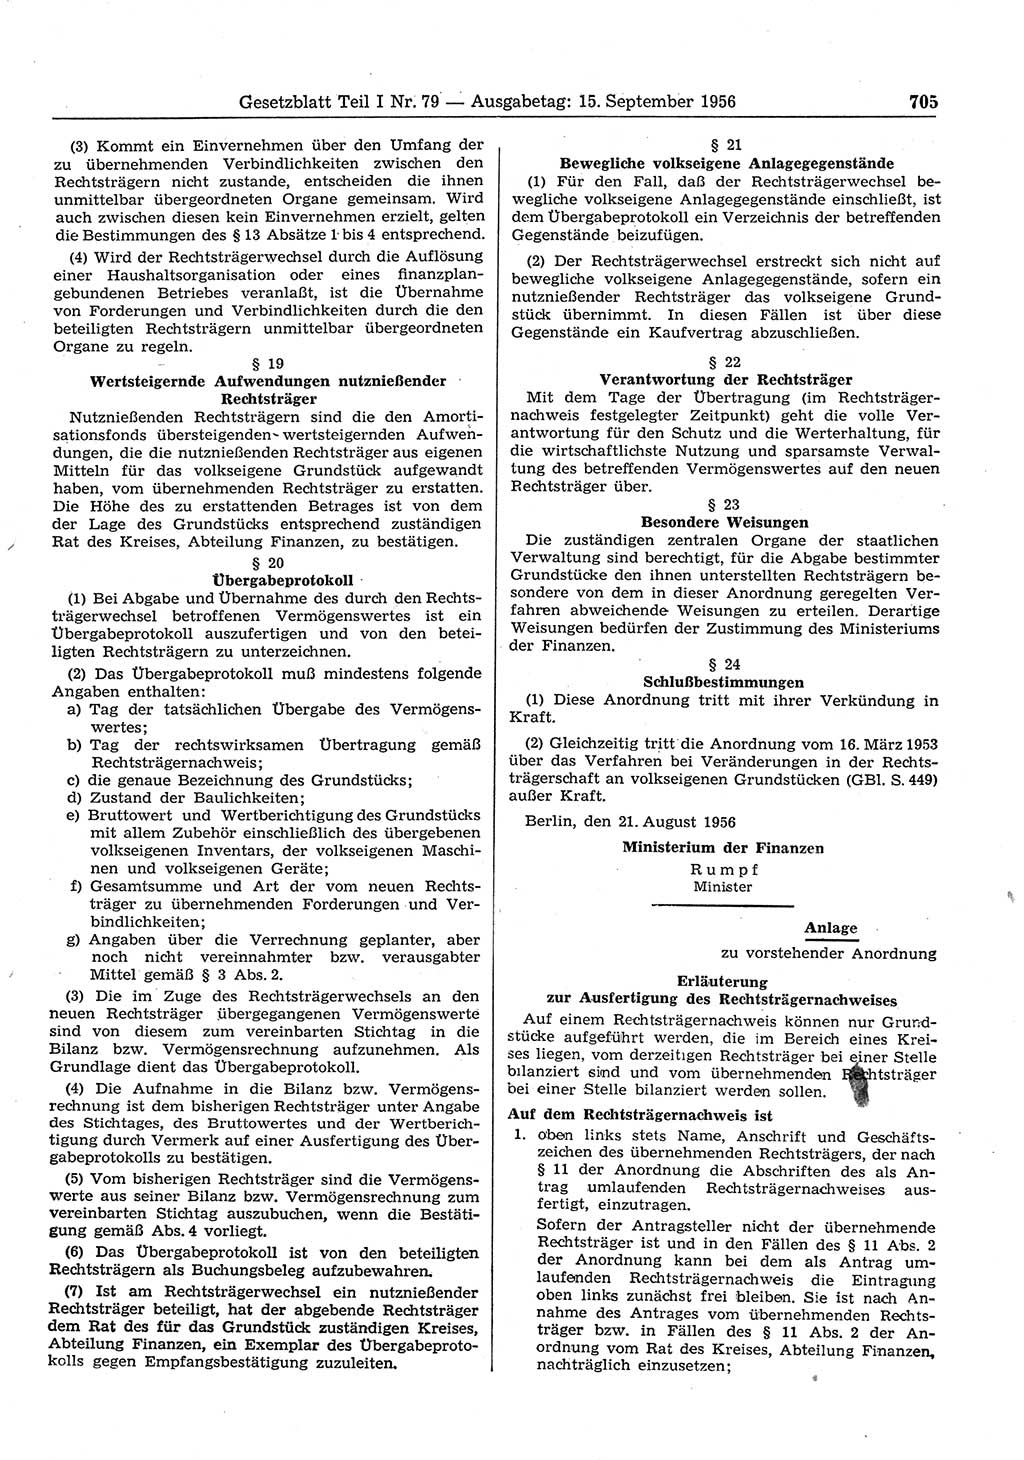 Gesetzblatt (GBl.) der Deutschen Demokratischen Republik (DDR) Teil Ⅰ 1956, Seite 705 (GBl. DDR Ⅰ 1956, S. 705)